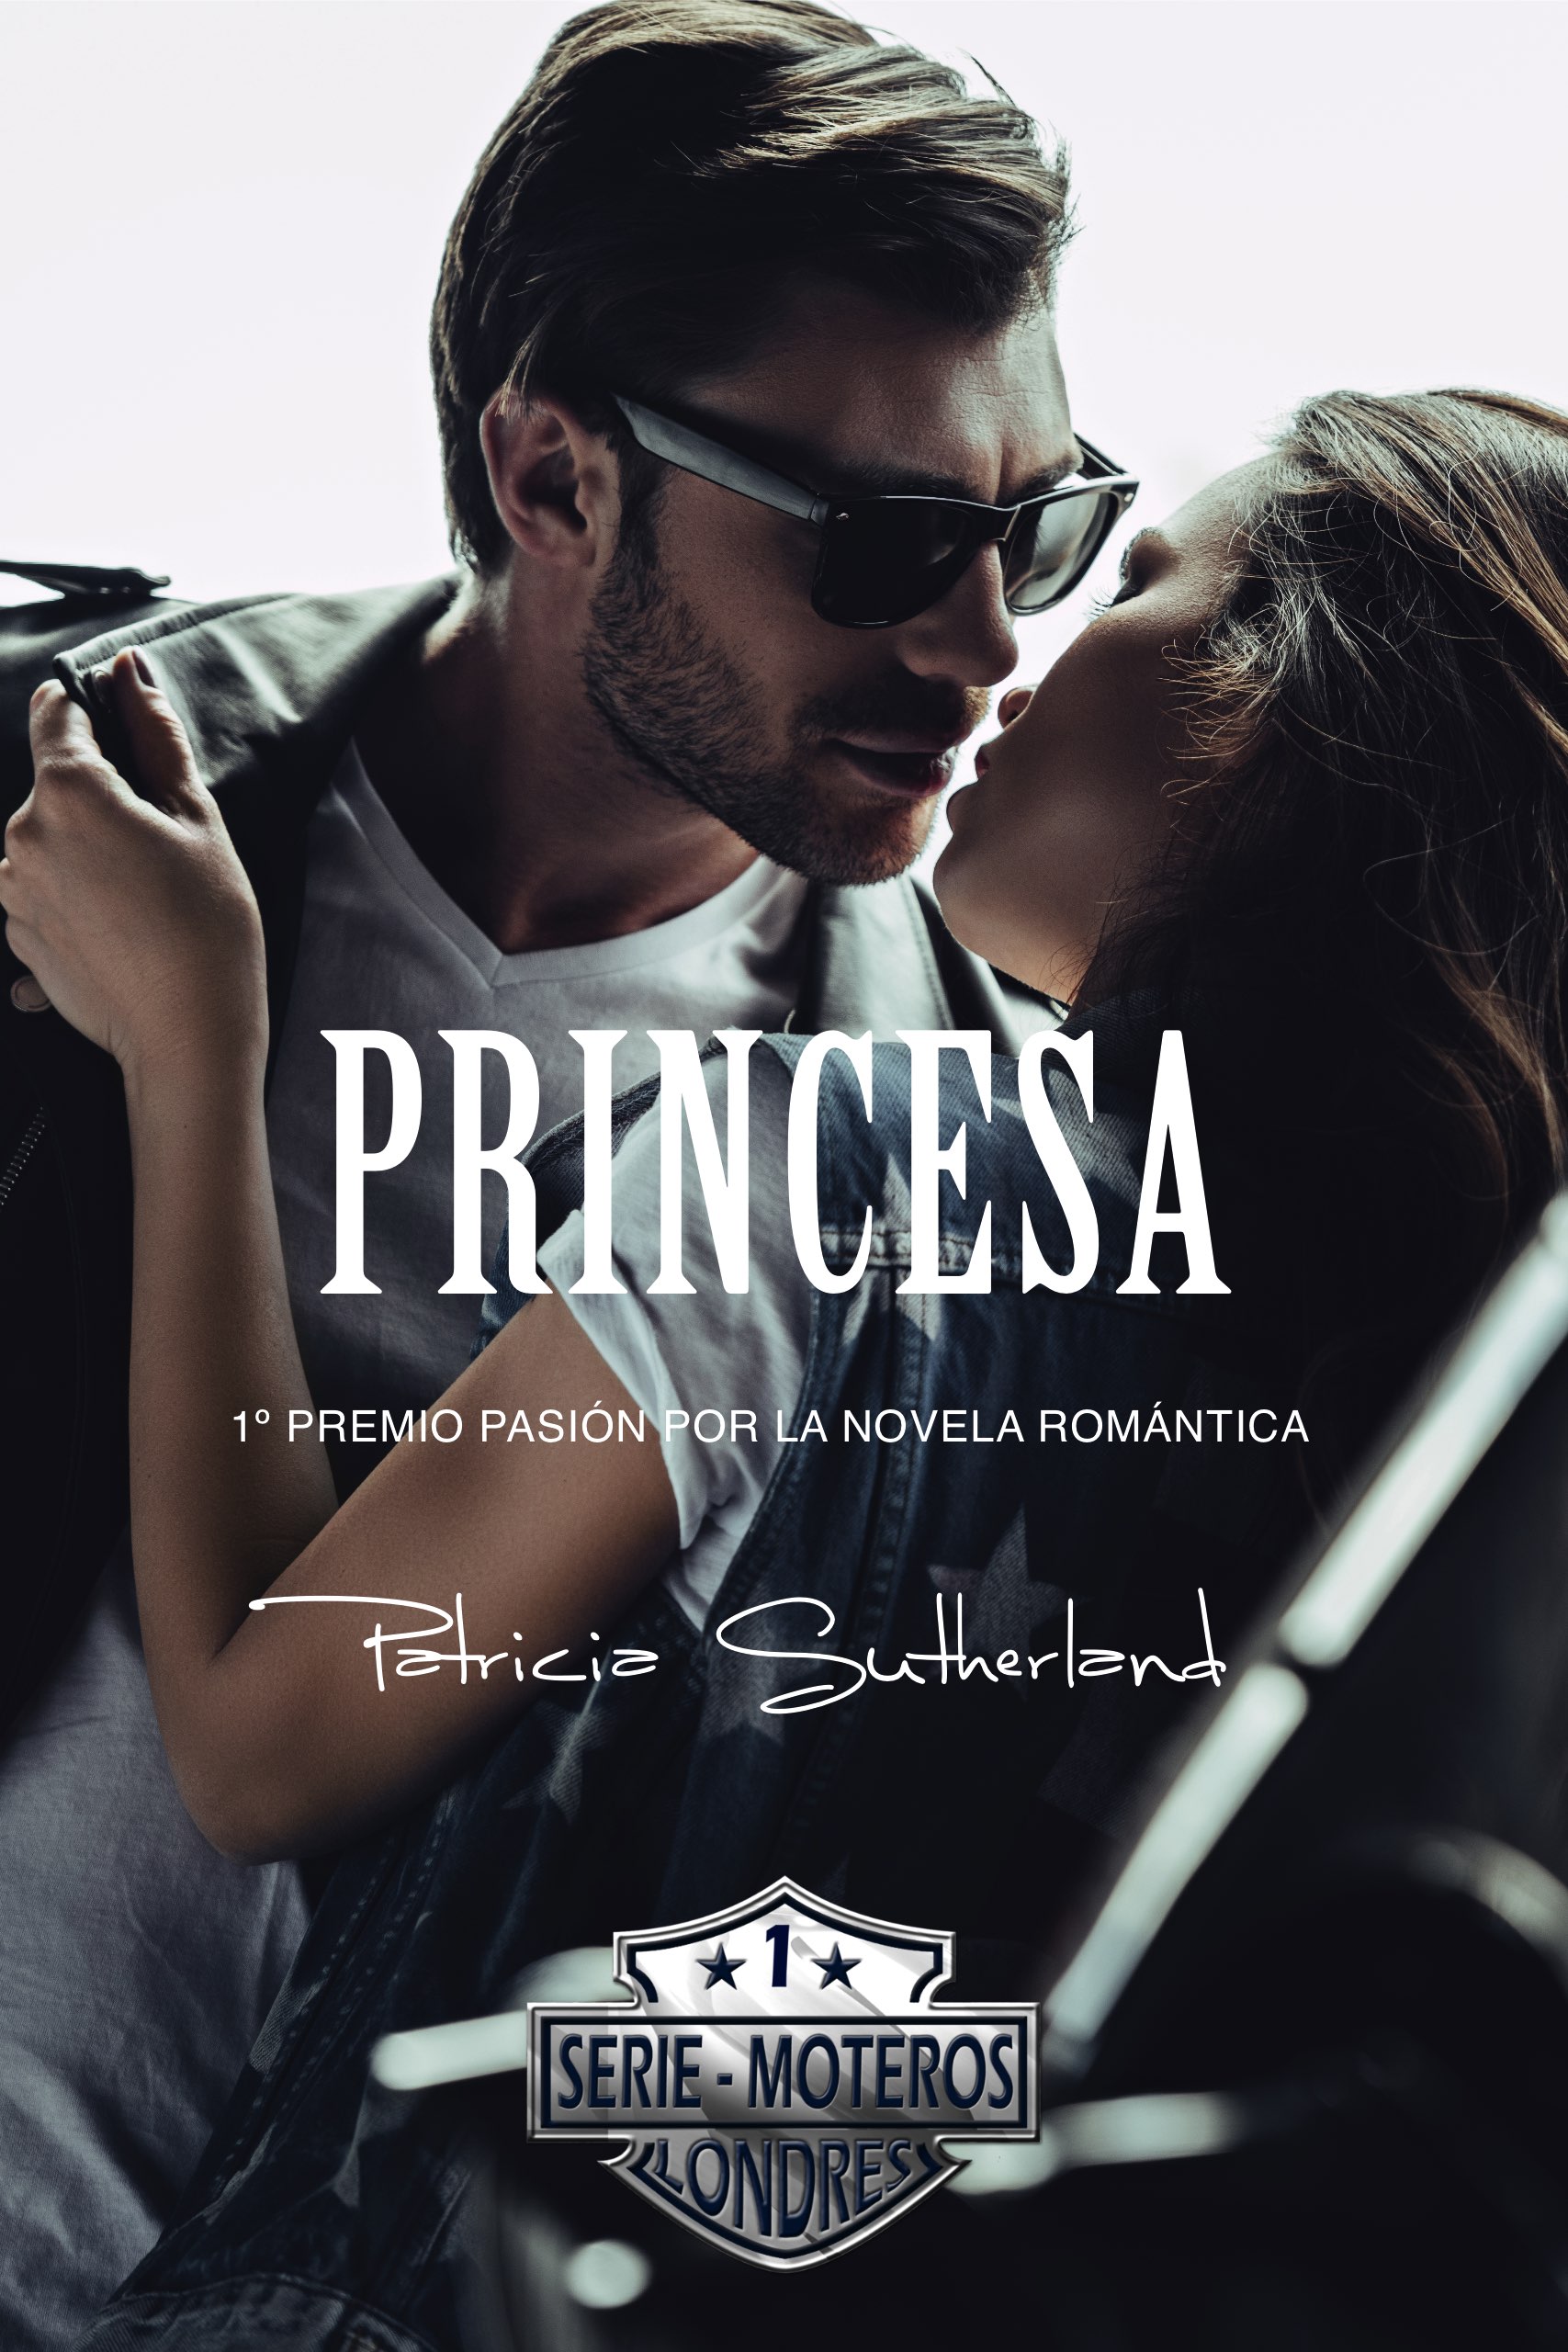 Princesa, una novela sobre el amor y la diferencia de edad